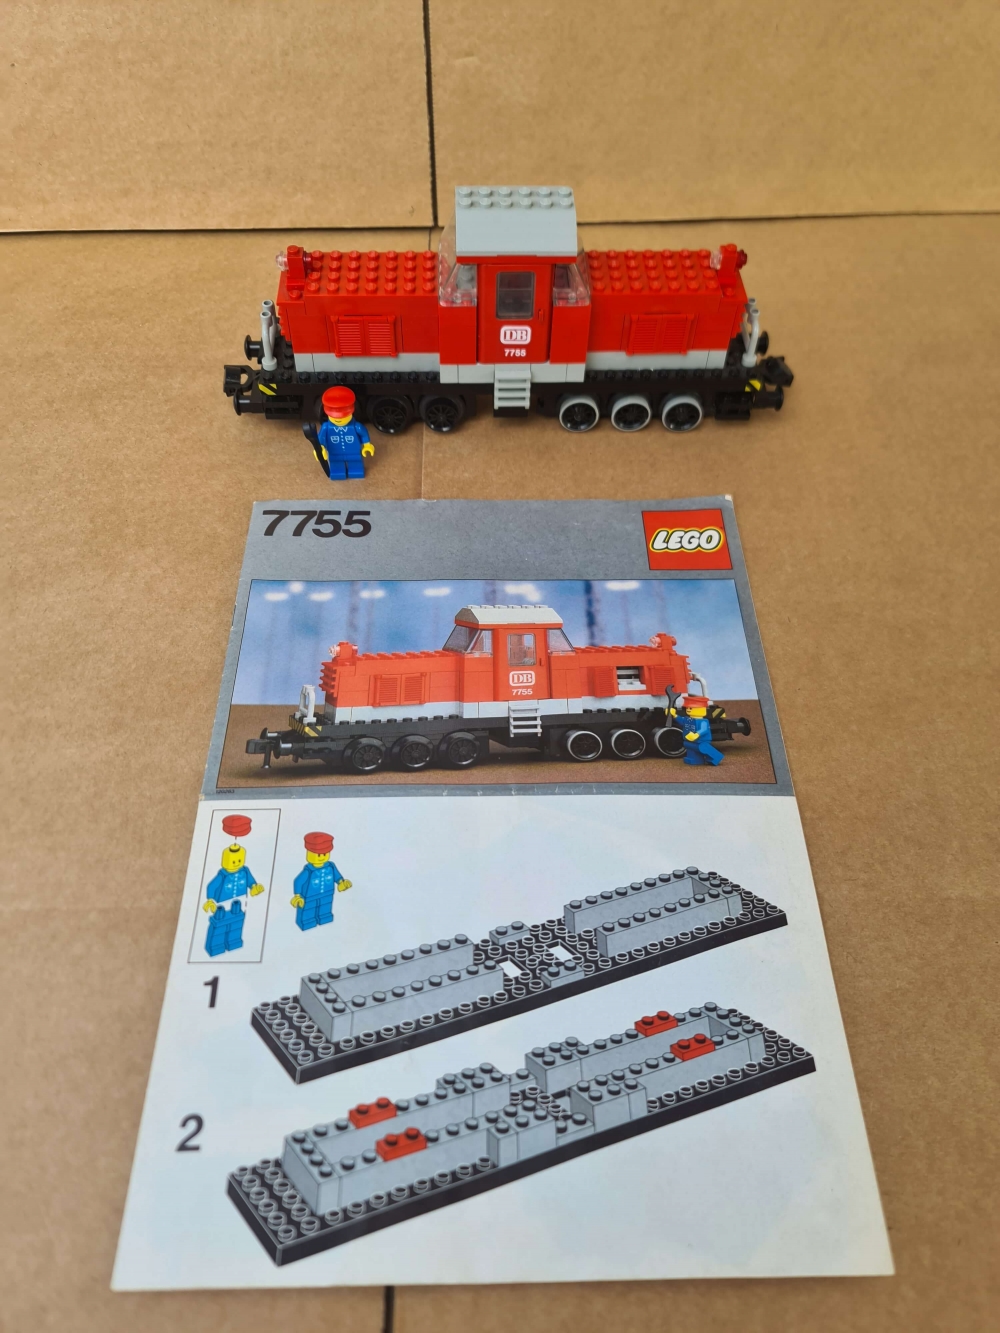 Sett 7755 fra lego Train: 12v serien.
Meget pent. Komplett med veldig fin manual.
Helt nye gummi på motor. Testet og fungerer perfekt.